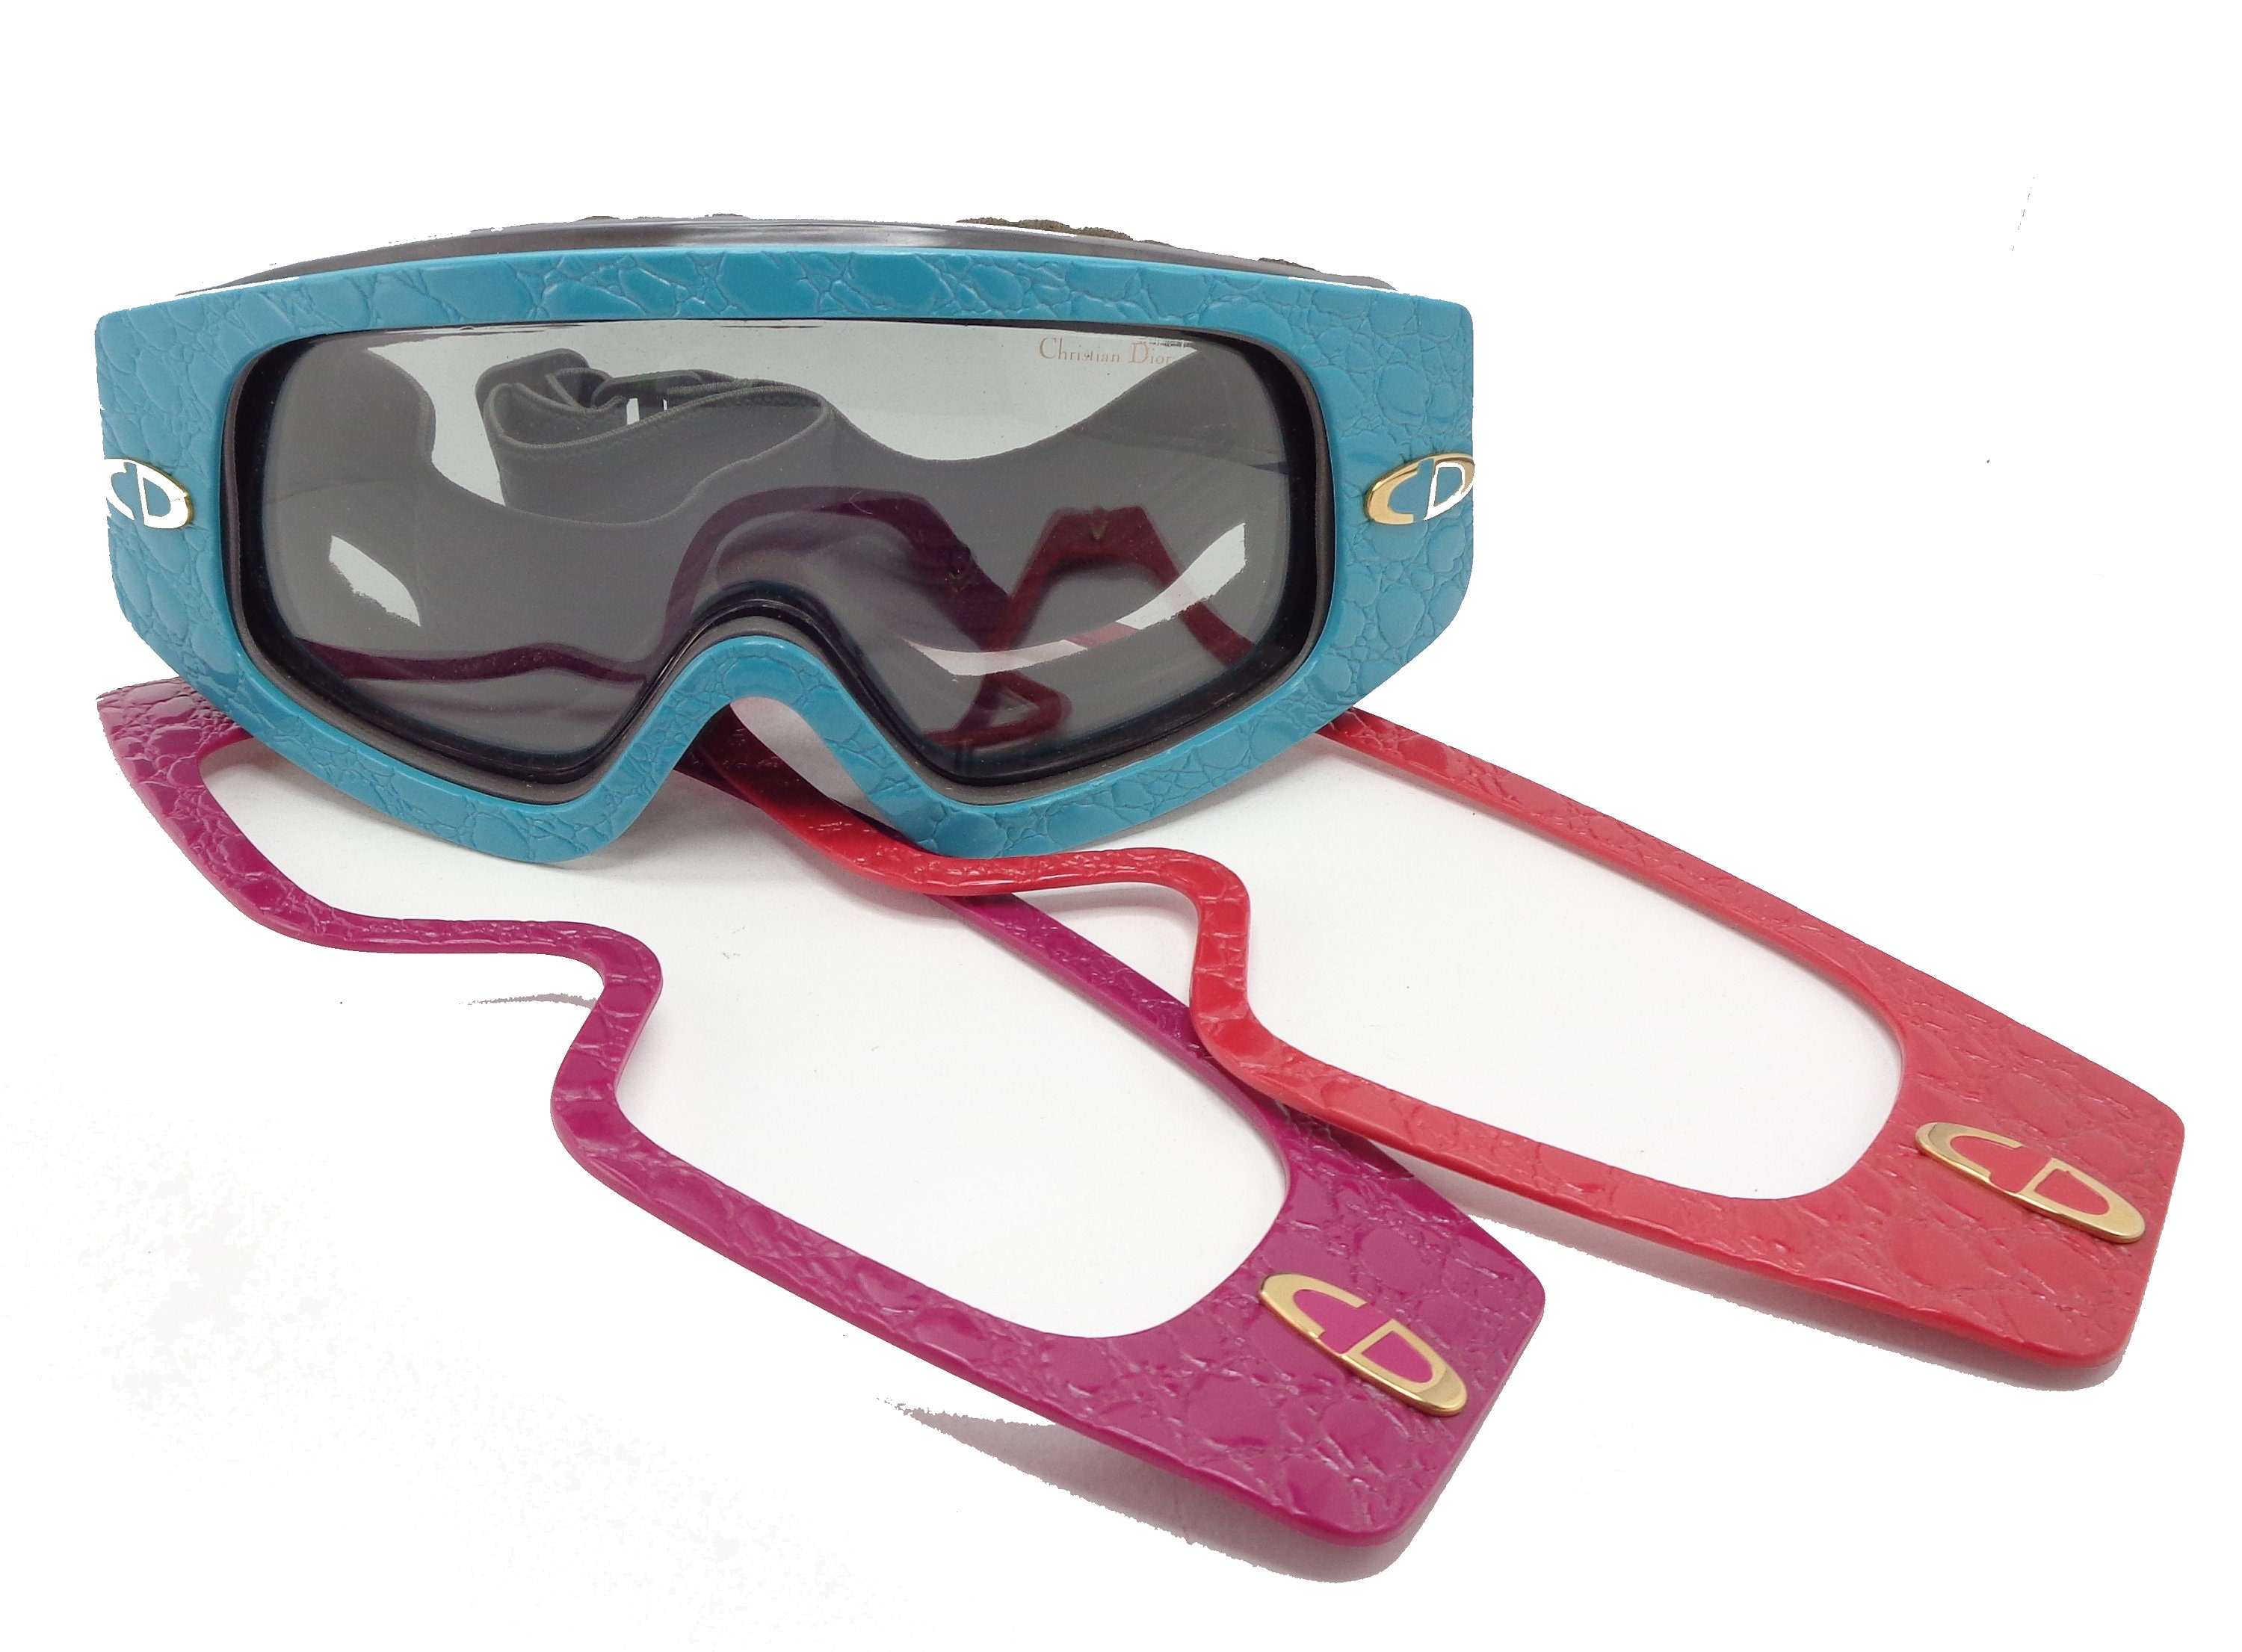 dior ski goggles